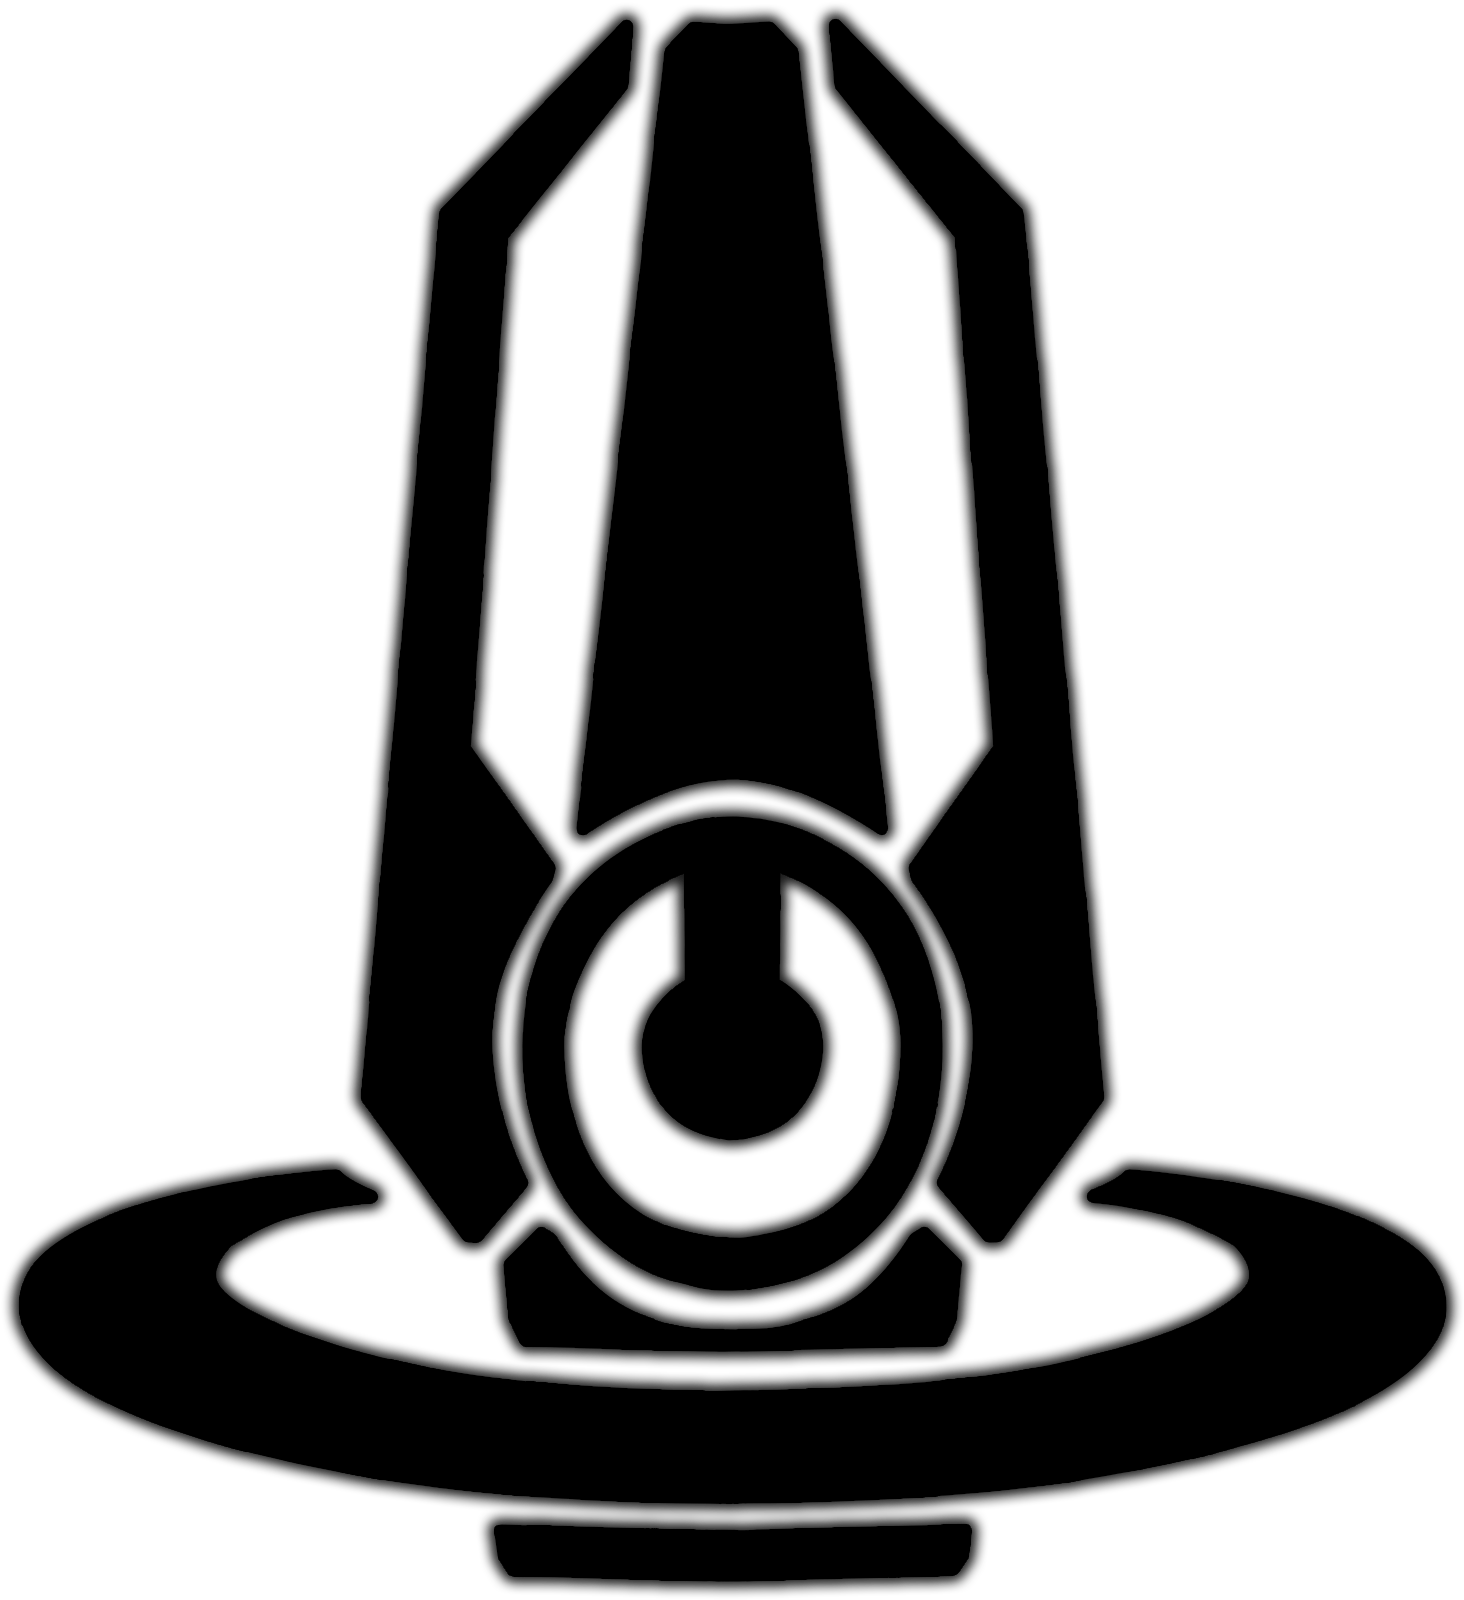 Holy Sith Empire - Emblem (1899x1701)